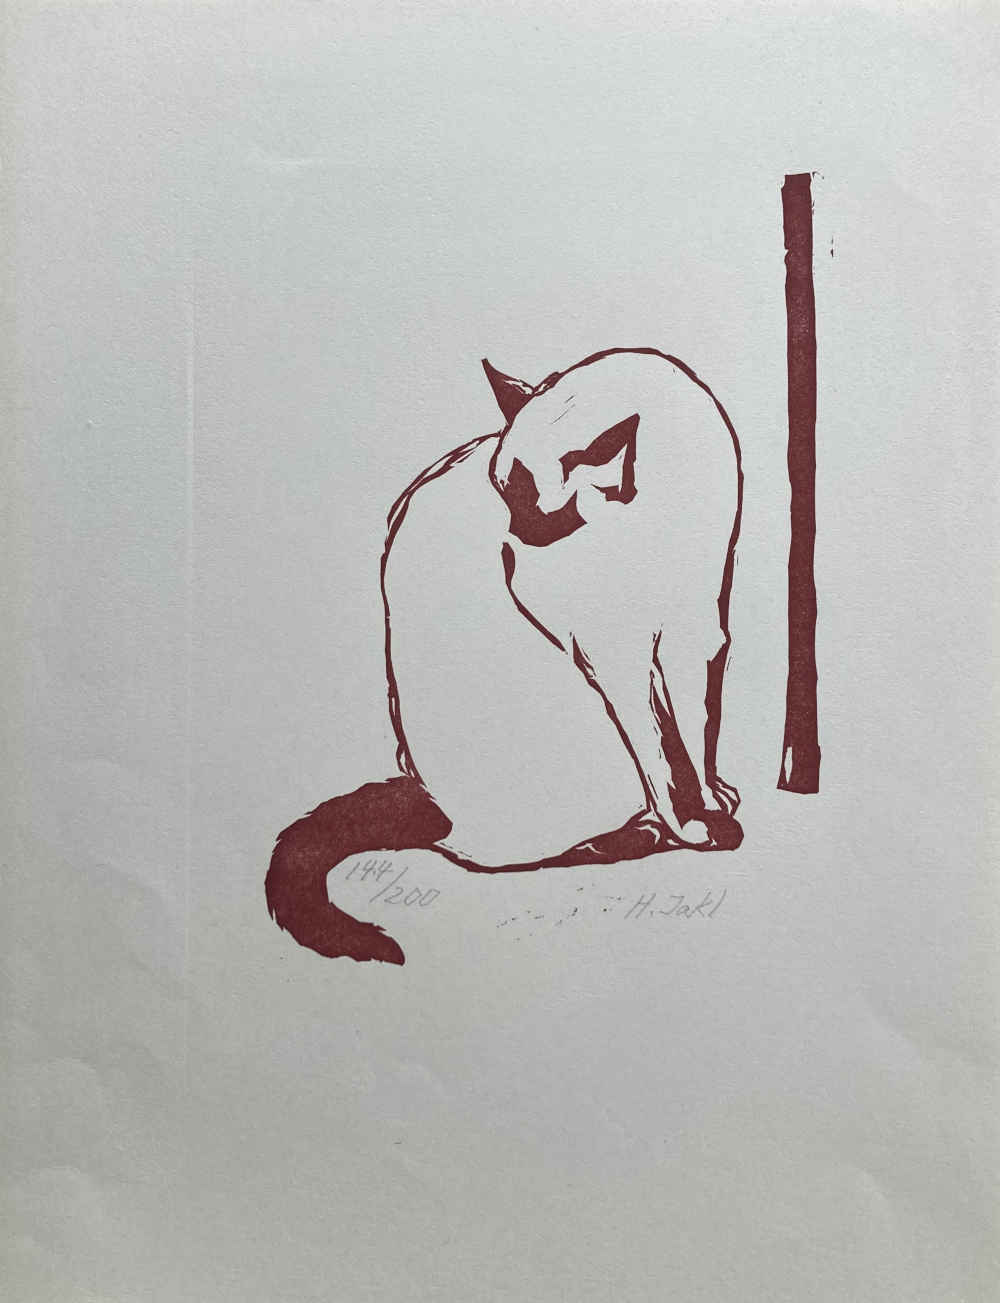 Linolschnitt mit Katze von Hermann Jakl.